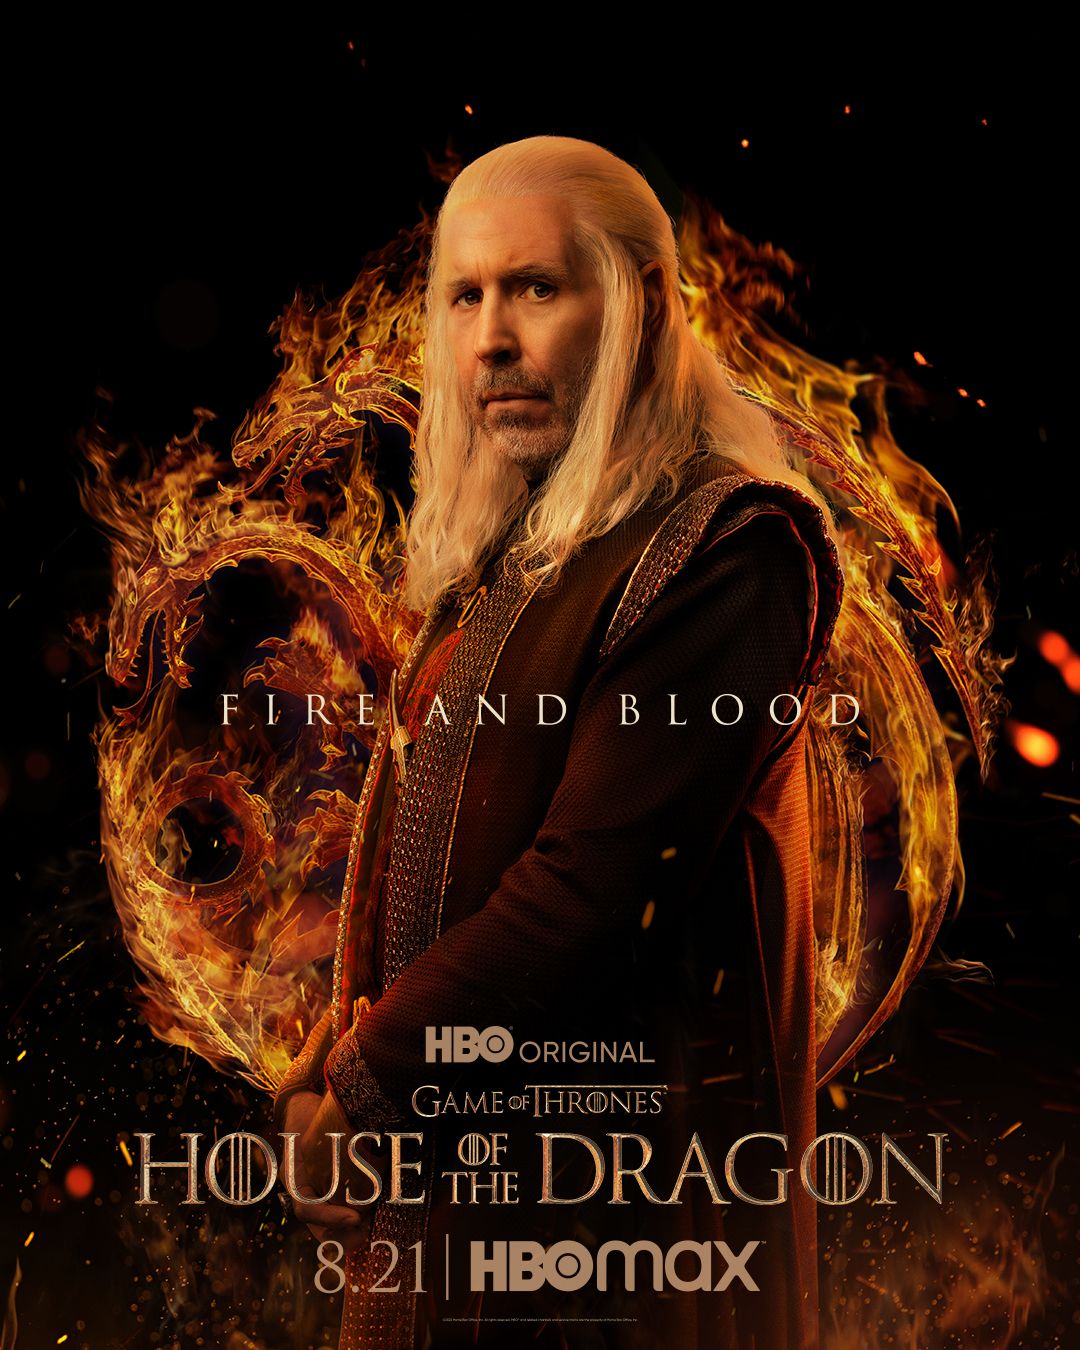 Viserys Targaryen in House of the Dragon poster